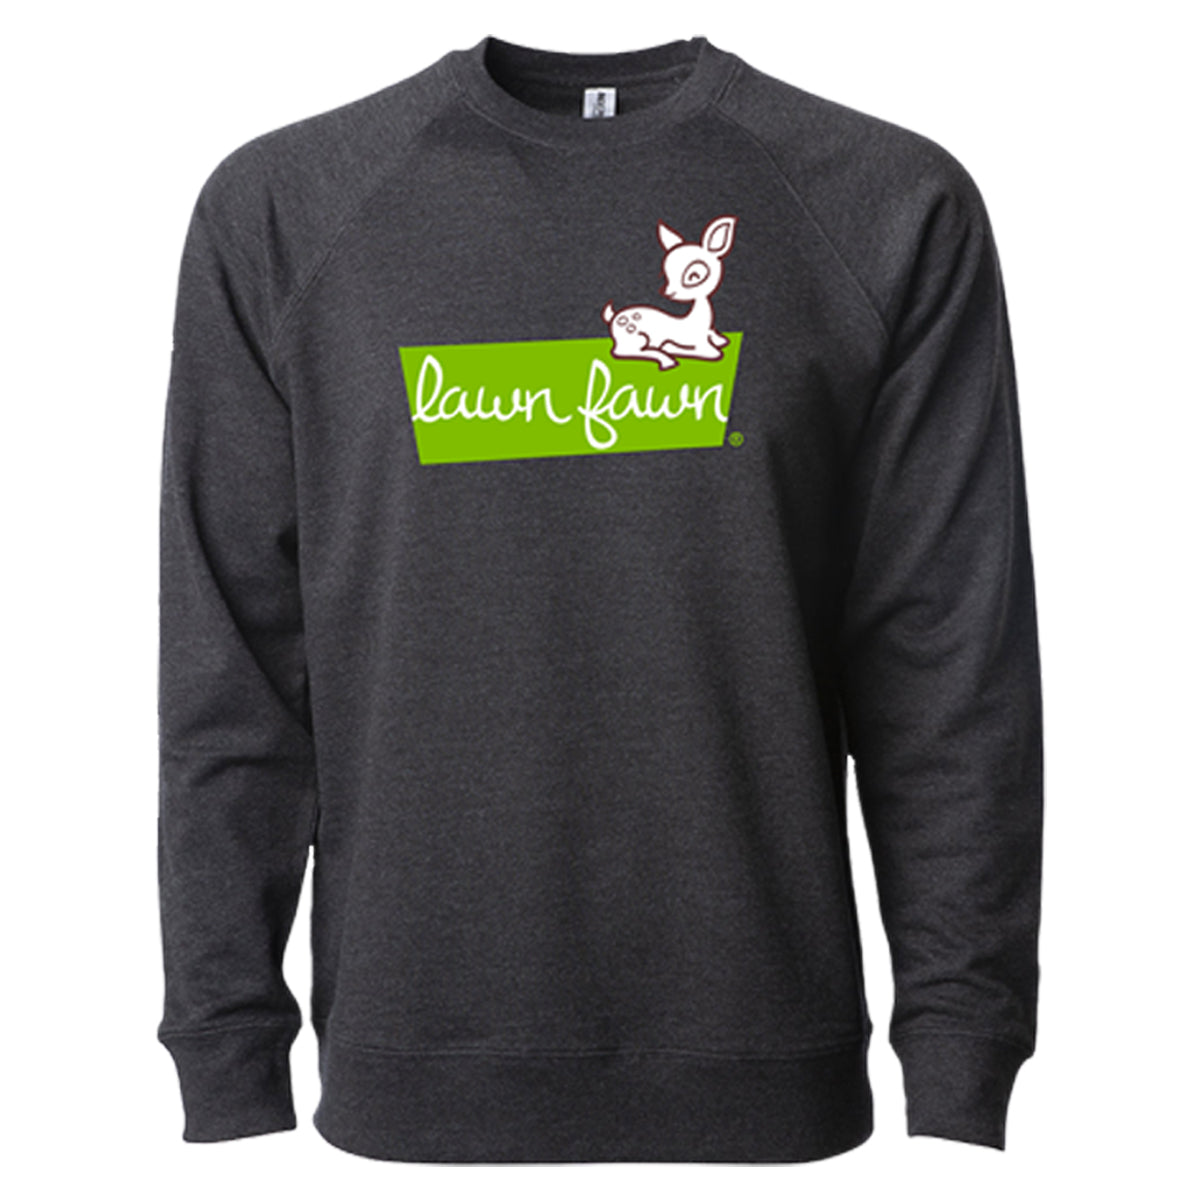 lawn fawn sweatshirt - 2XL